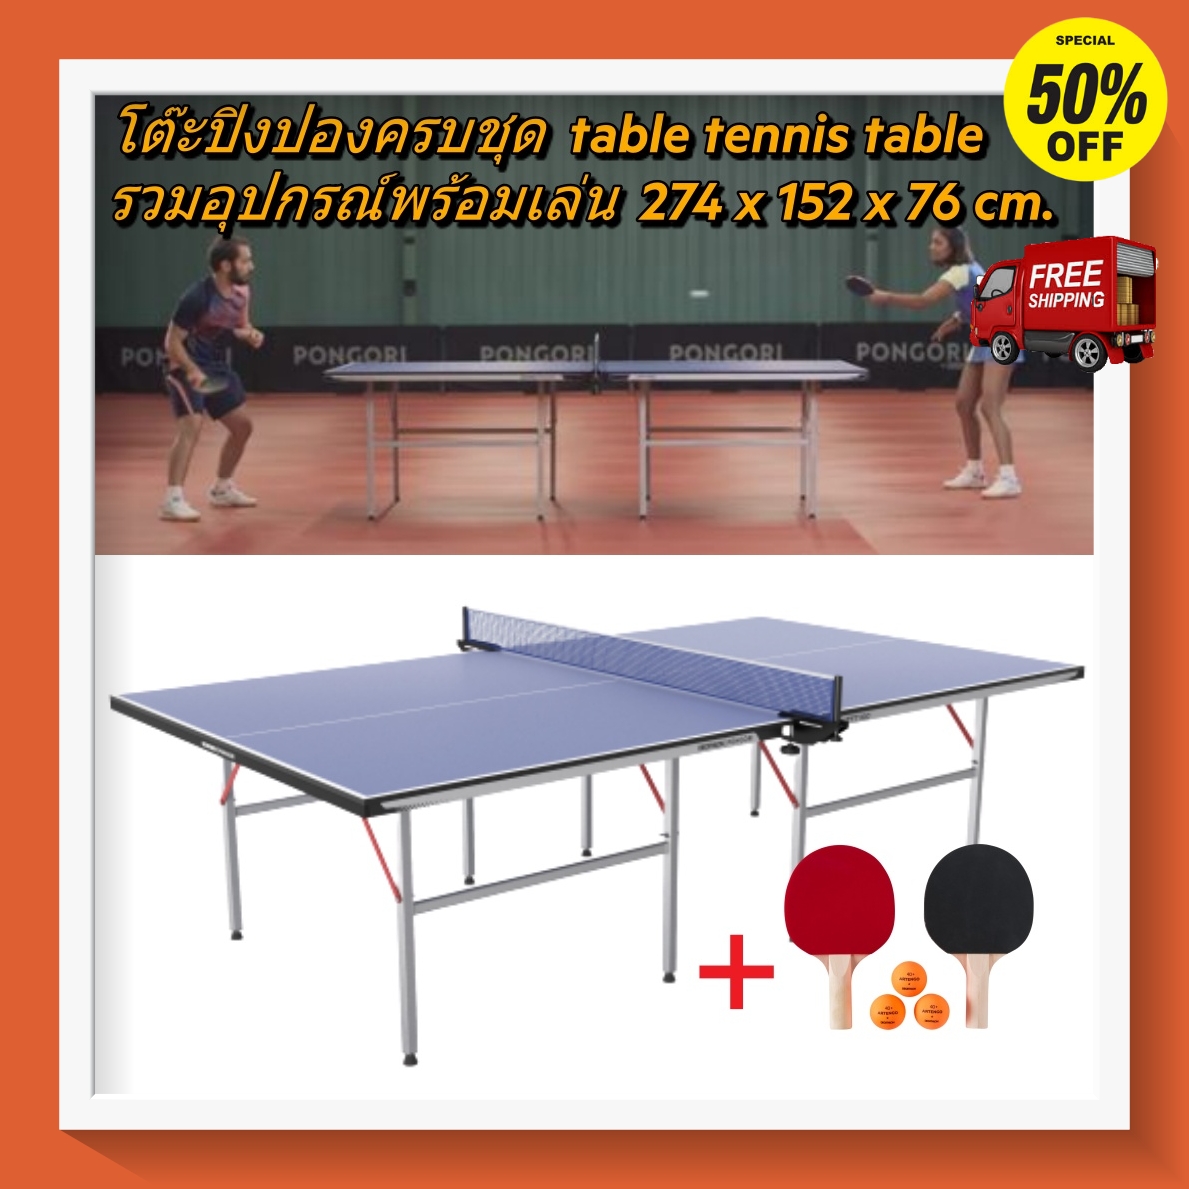 [ส่งฟรี ]โต๊ะปิงปองครบชุดขนาดกลาง พับได้ ปิงปองฝึกสมาธิ 274x152x76 ซม. ซม. รุ่น TTT100 TTT100 Indoor Table Tennis Table 274x152x76 cm ไม้ปิงปอง โต๊ะปิงปอง เน็ตปิงปอง ลูกปิงปอง ออกกำลังกาย โปรโมชั่นสุดคุ้ม